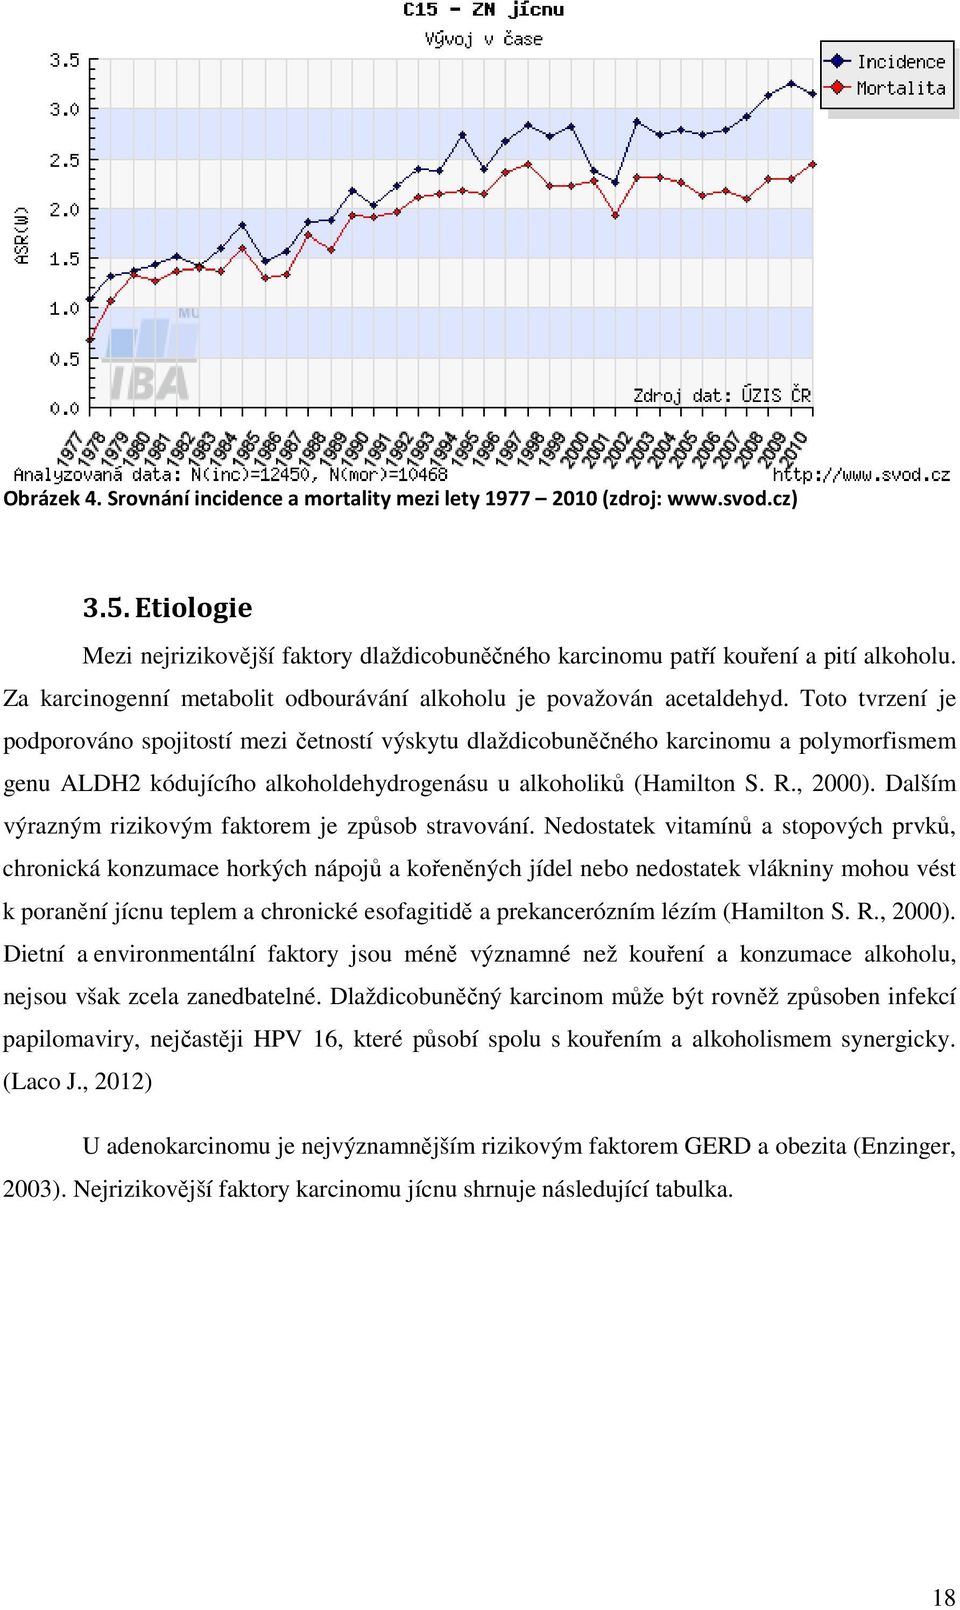 Toto tvrzení je podporováno spojitostí mezi četností výskytu dlaždicobuněčného karcinomu a polymorfismem genu ALDH2 kódujícího alkoholdehydrogenásu u alkoholiků (Hamilton S. R., 2000).